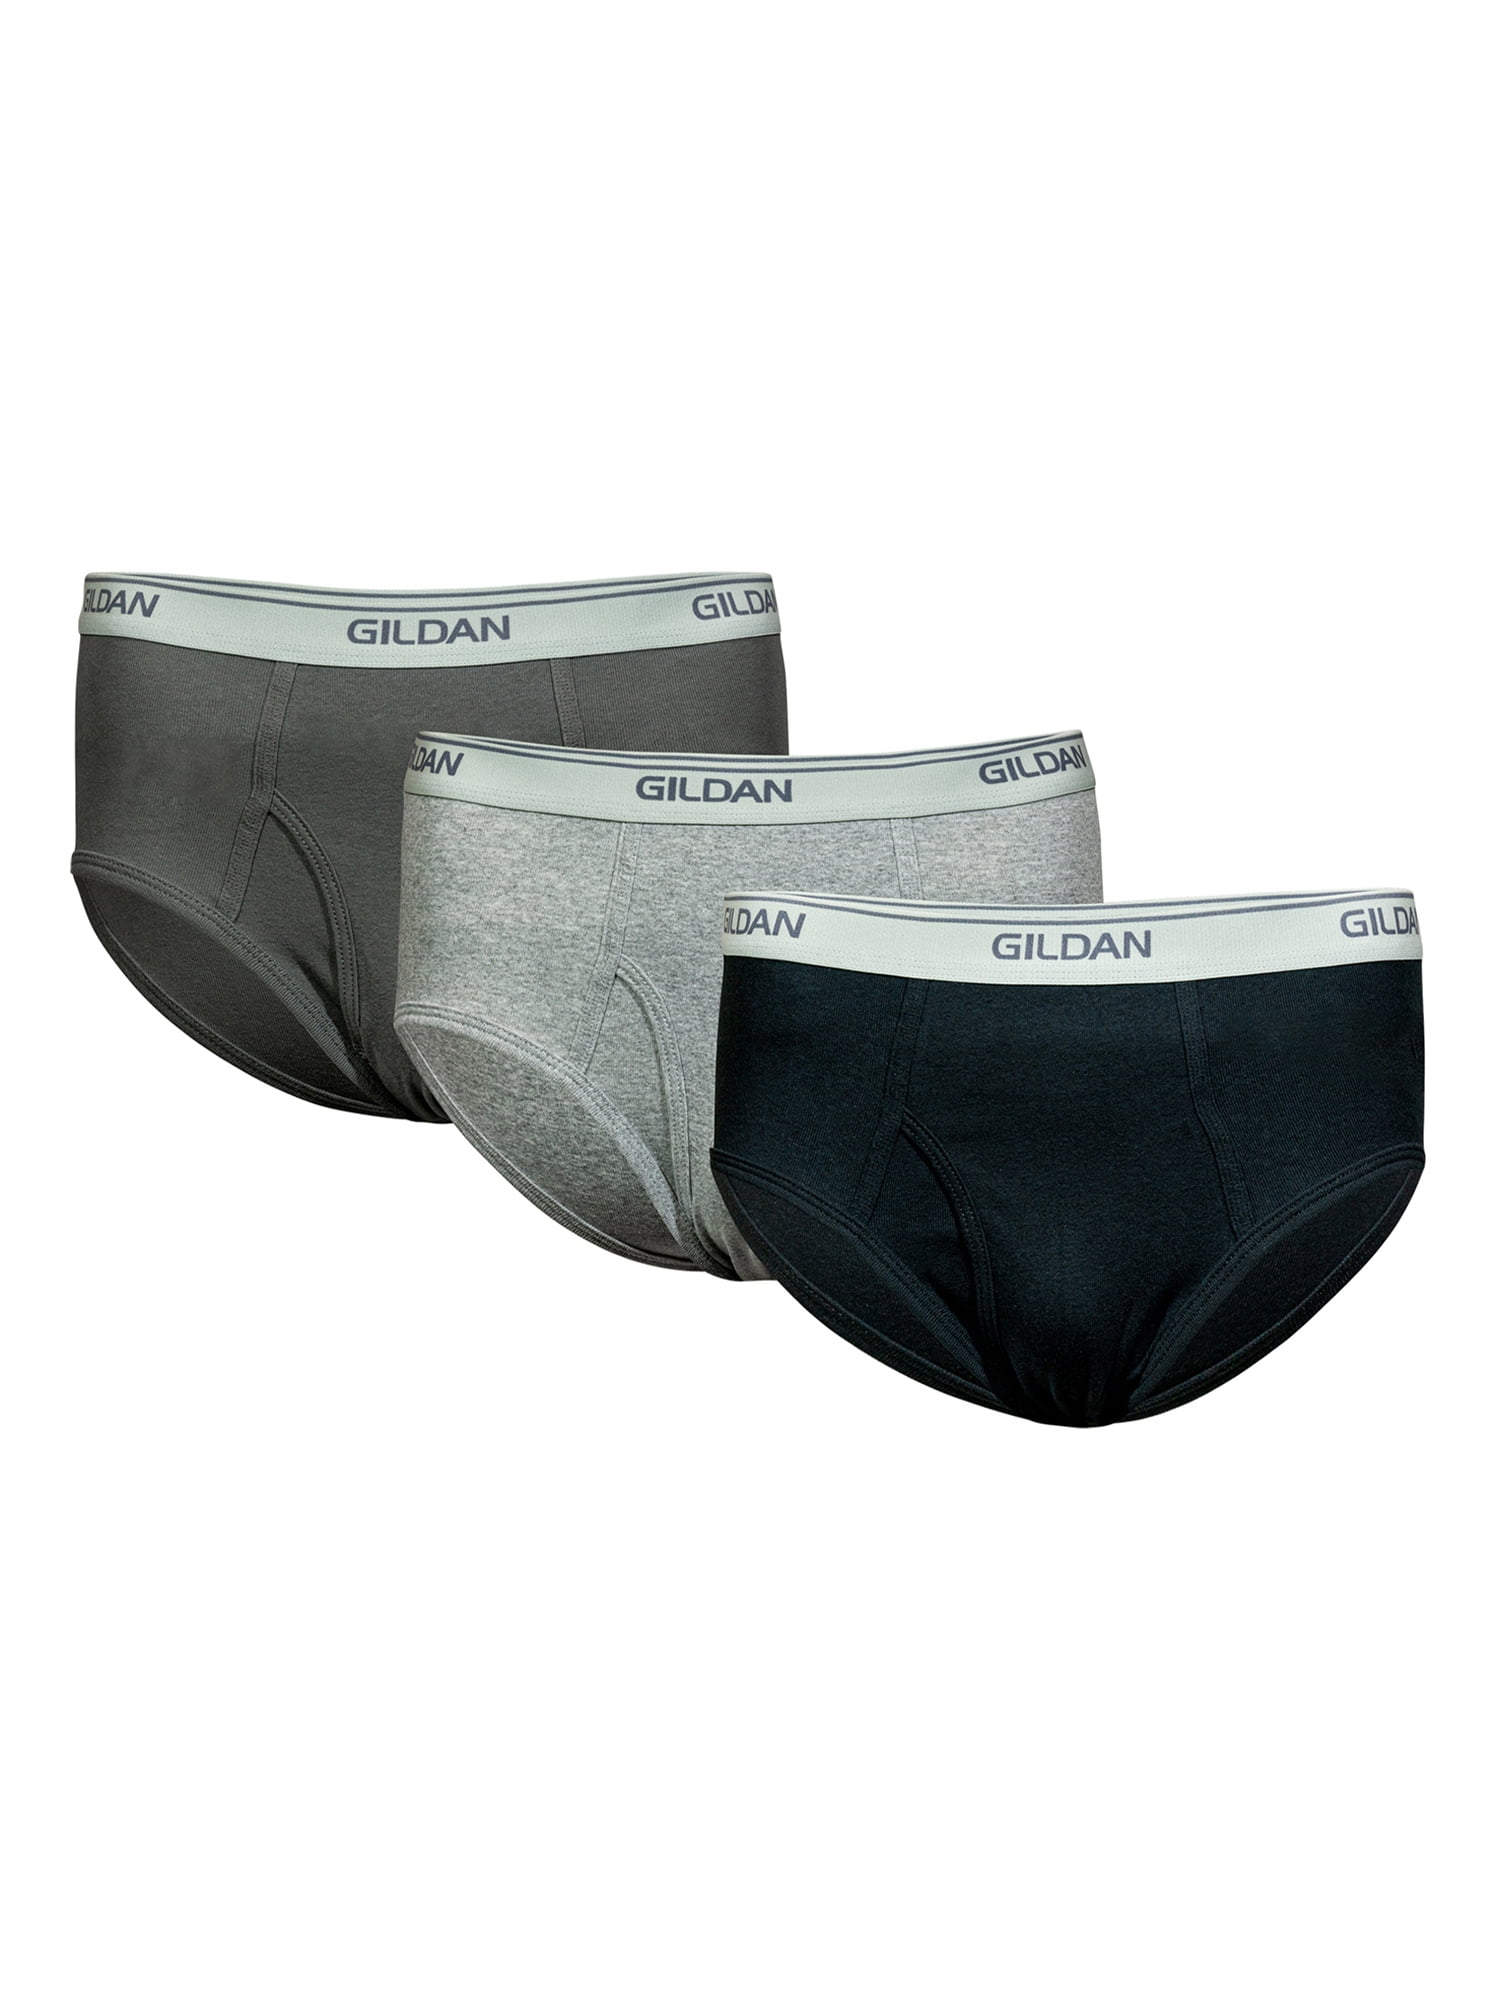 Gildan Men's Modern Briefs, 3-Pack , gildan underwear white briefs - mi ...